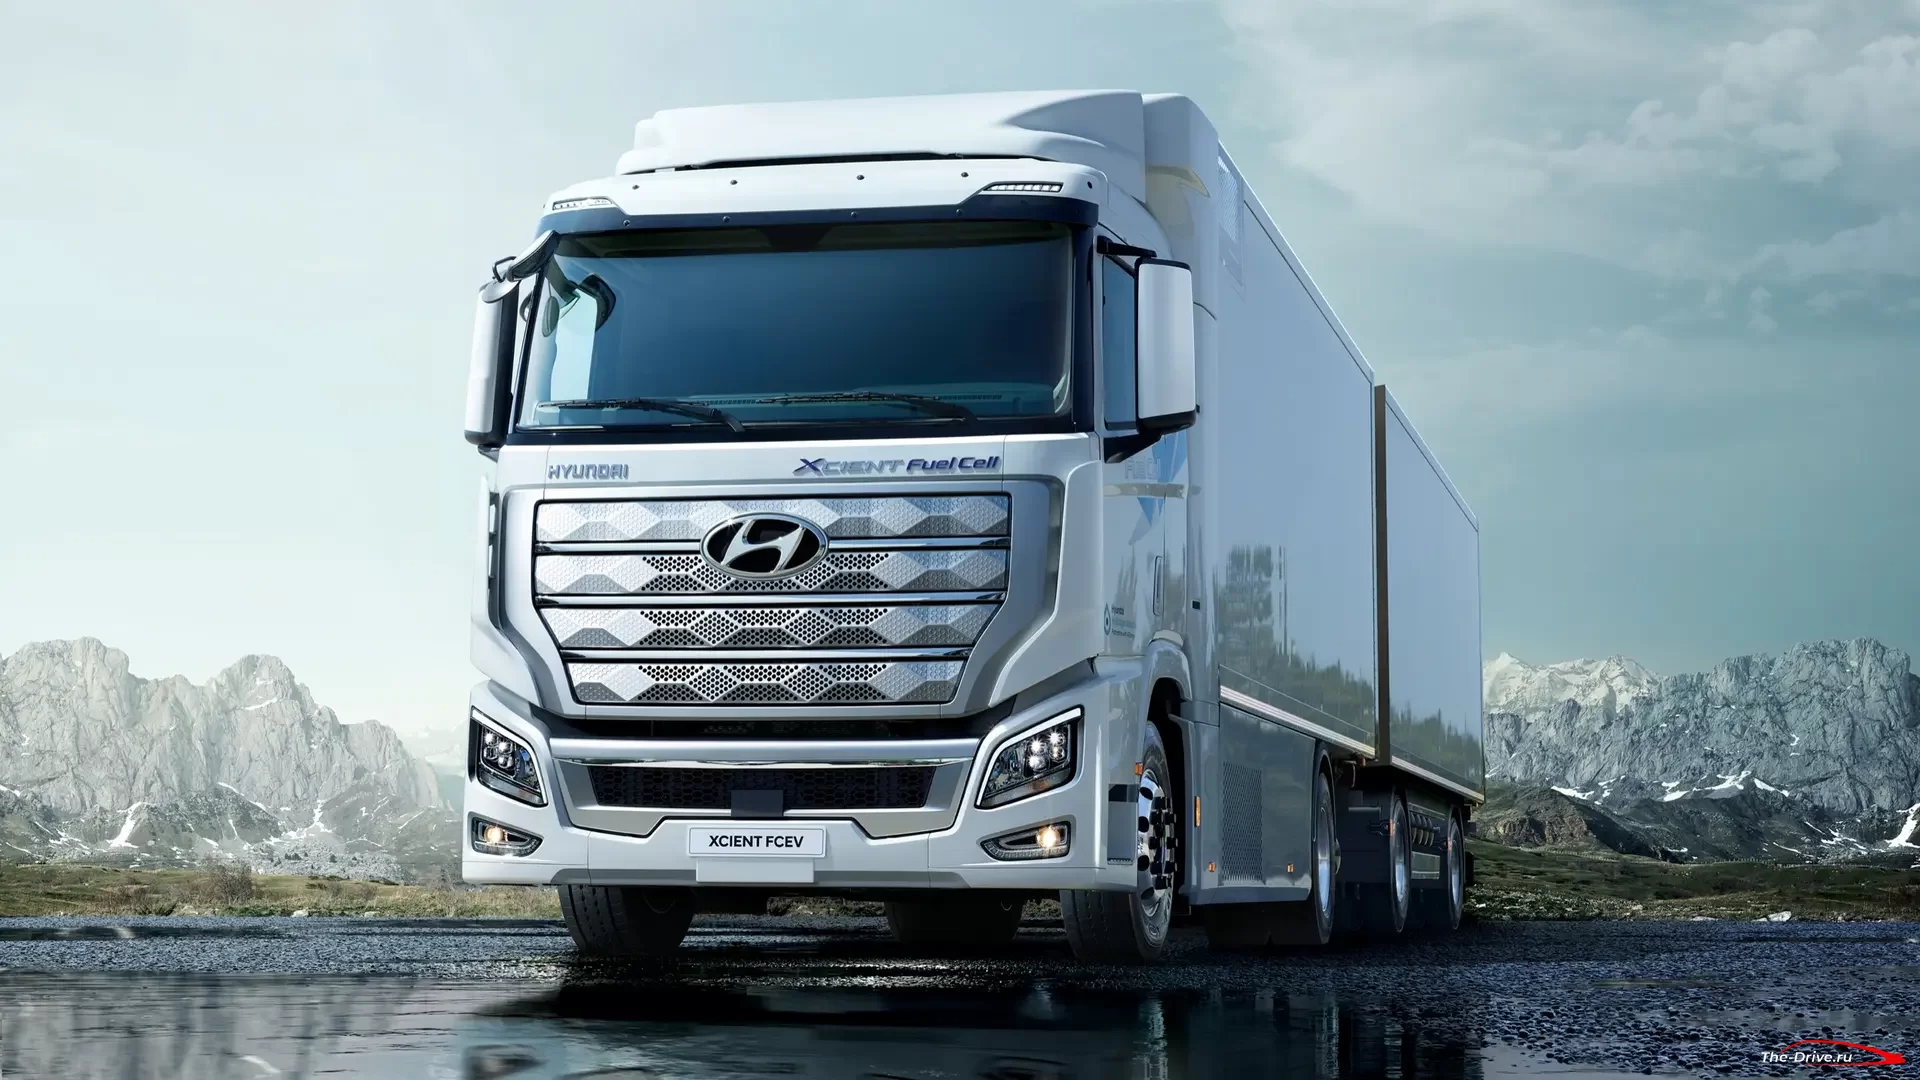 Полу грузовик Hyundai Xcient Fuel Cell готовится к работе в Европе